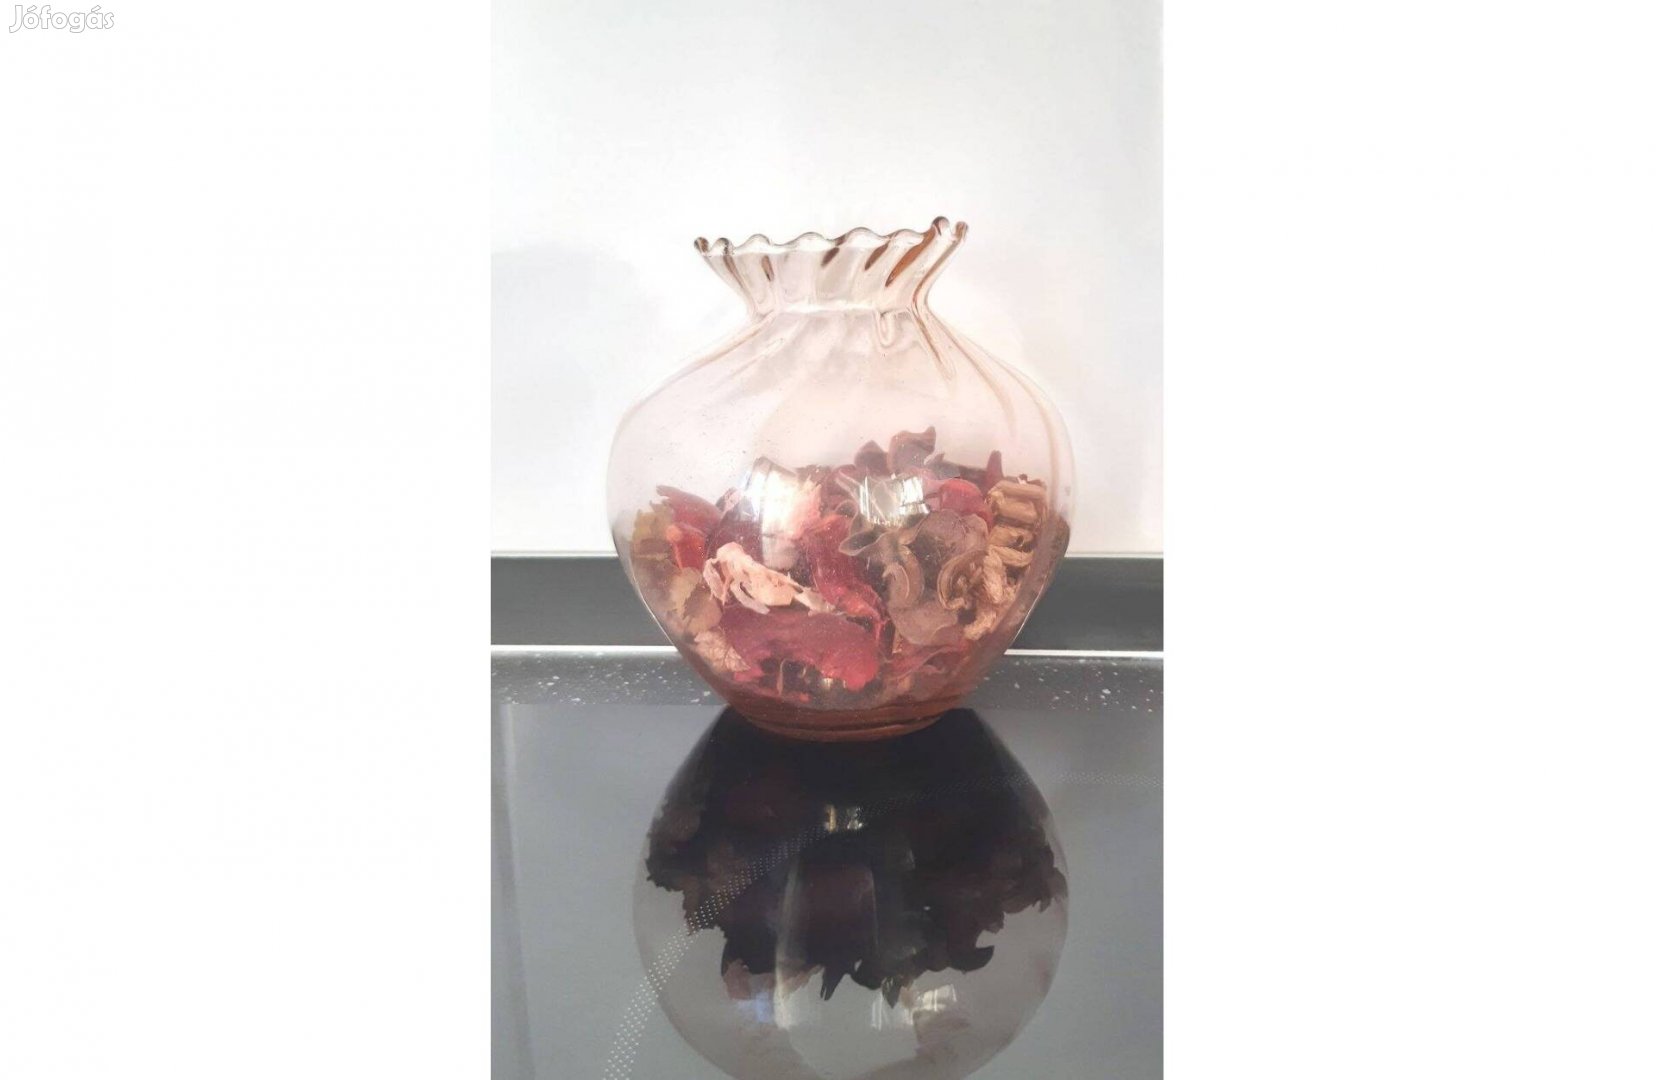 Rózsaszín, dekoratív üveg vázácska keresi új otthonát